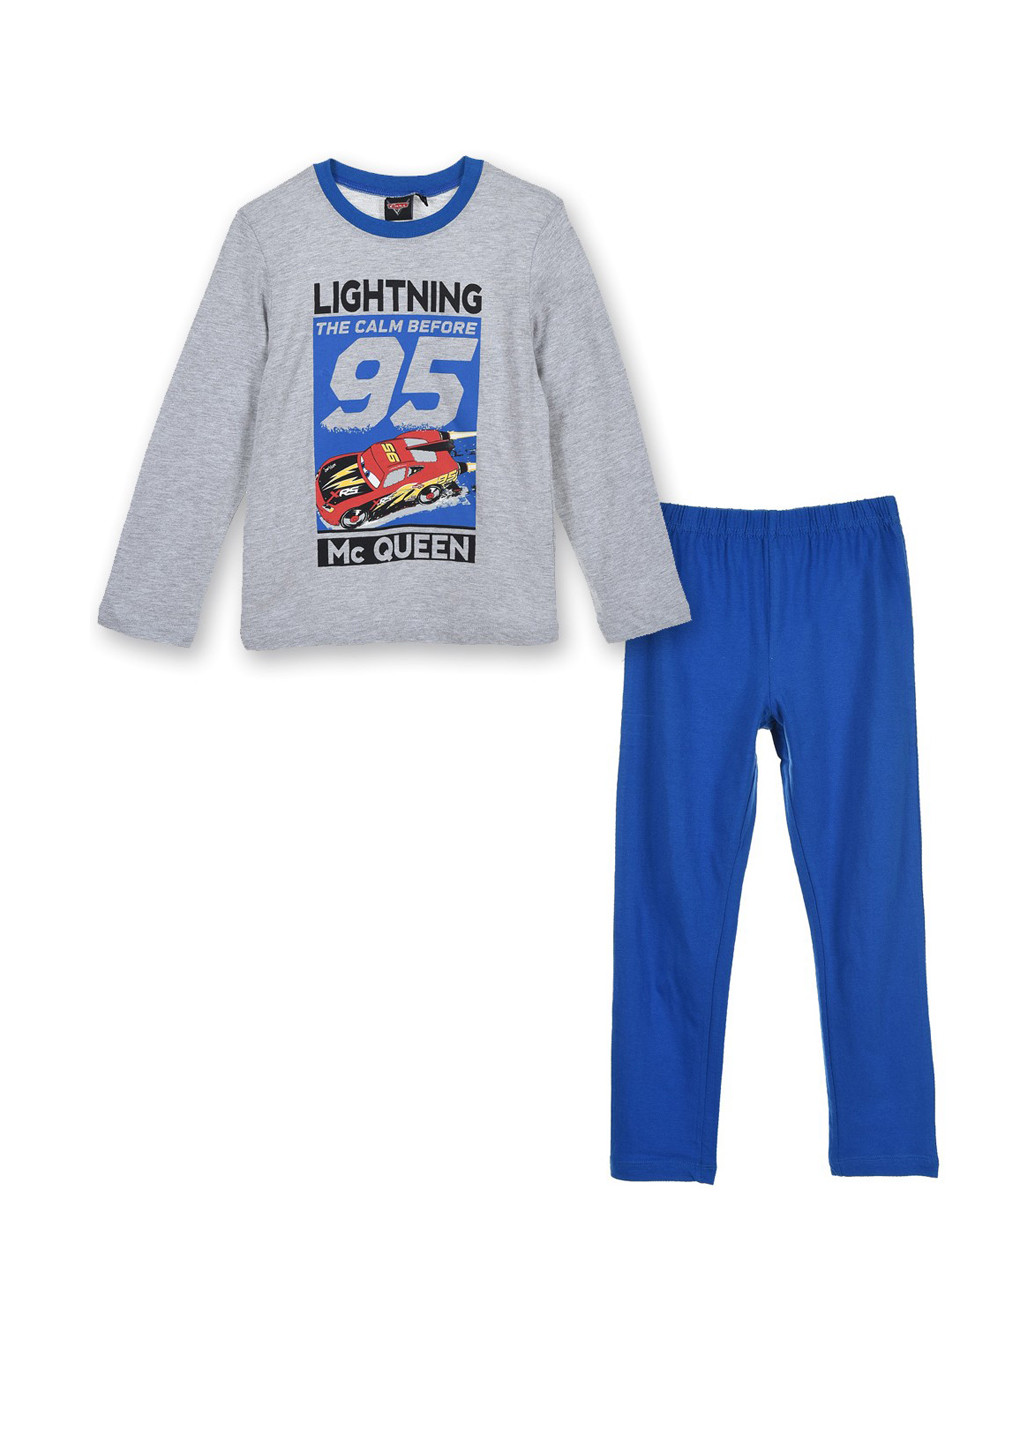 Синяя всесезон пижама (лонгслив, брюки) лонгслив + брюки Disney